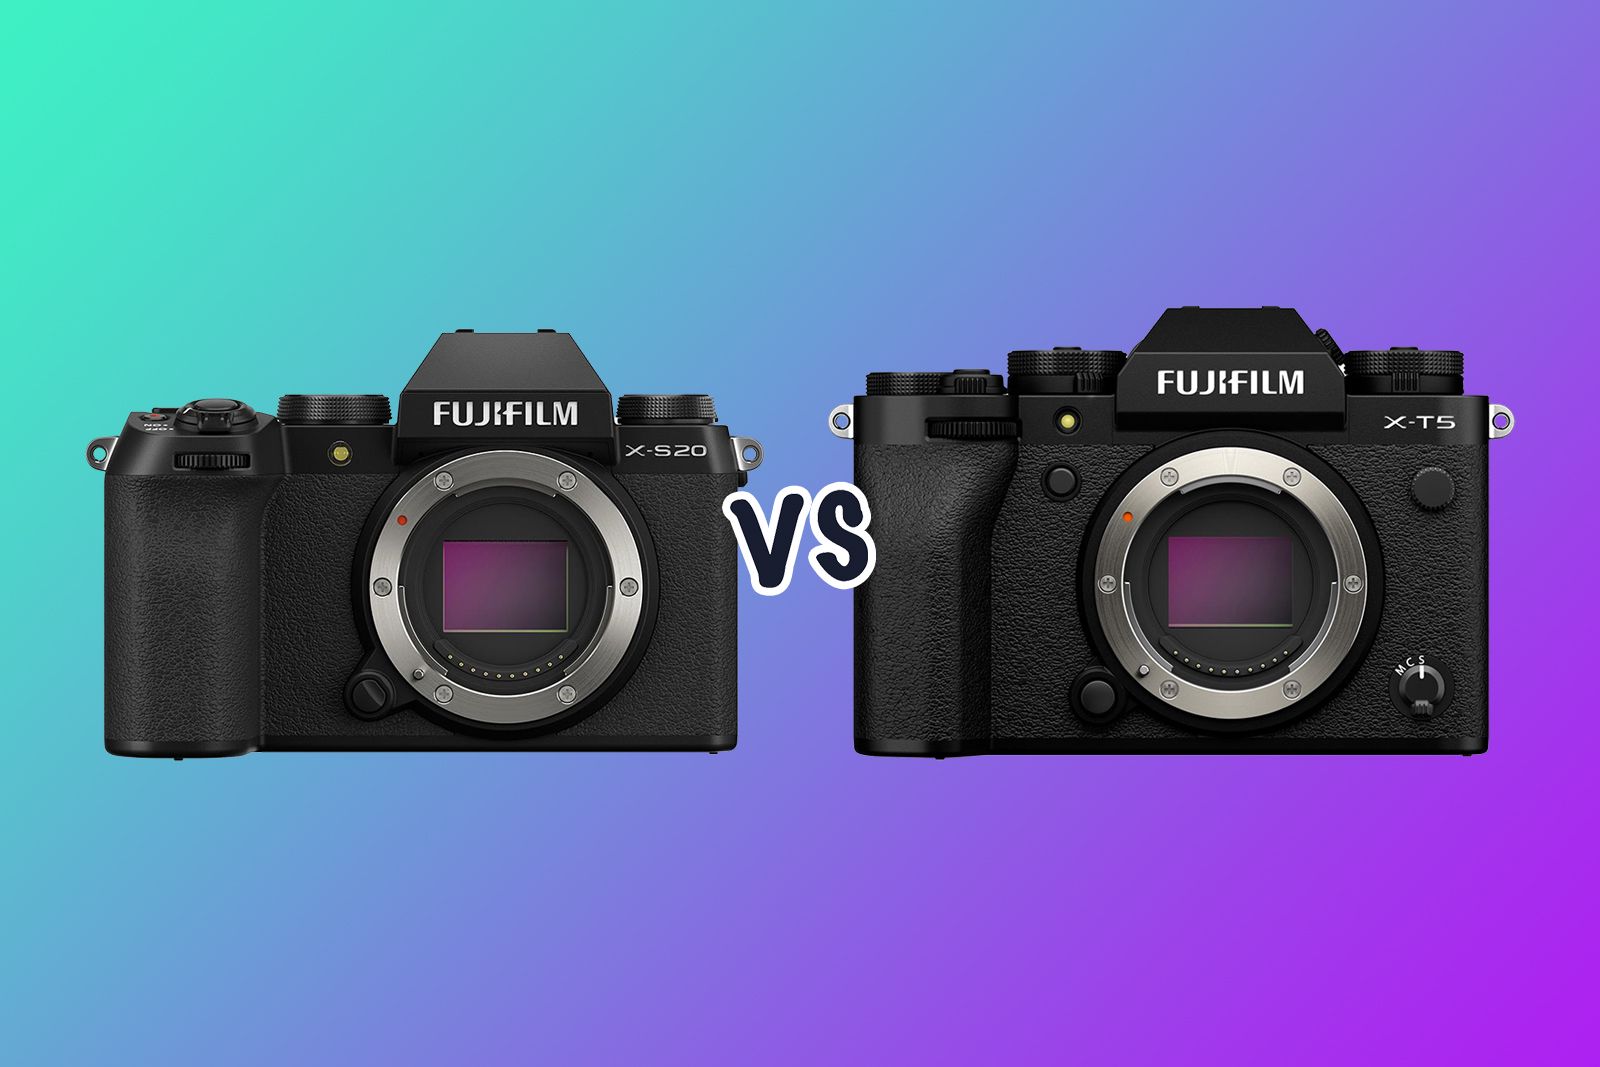 Fujifilm X-S20 vs X-T5